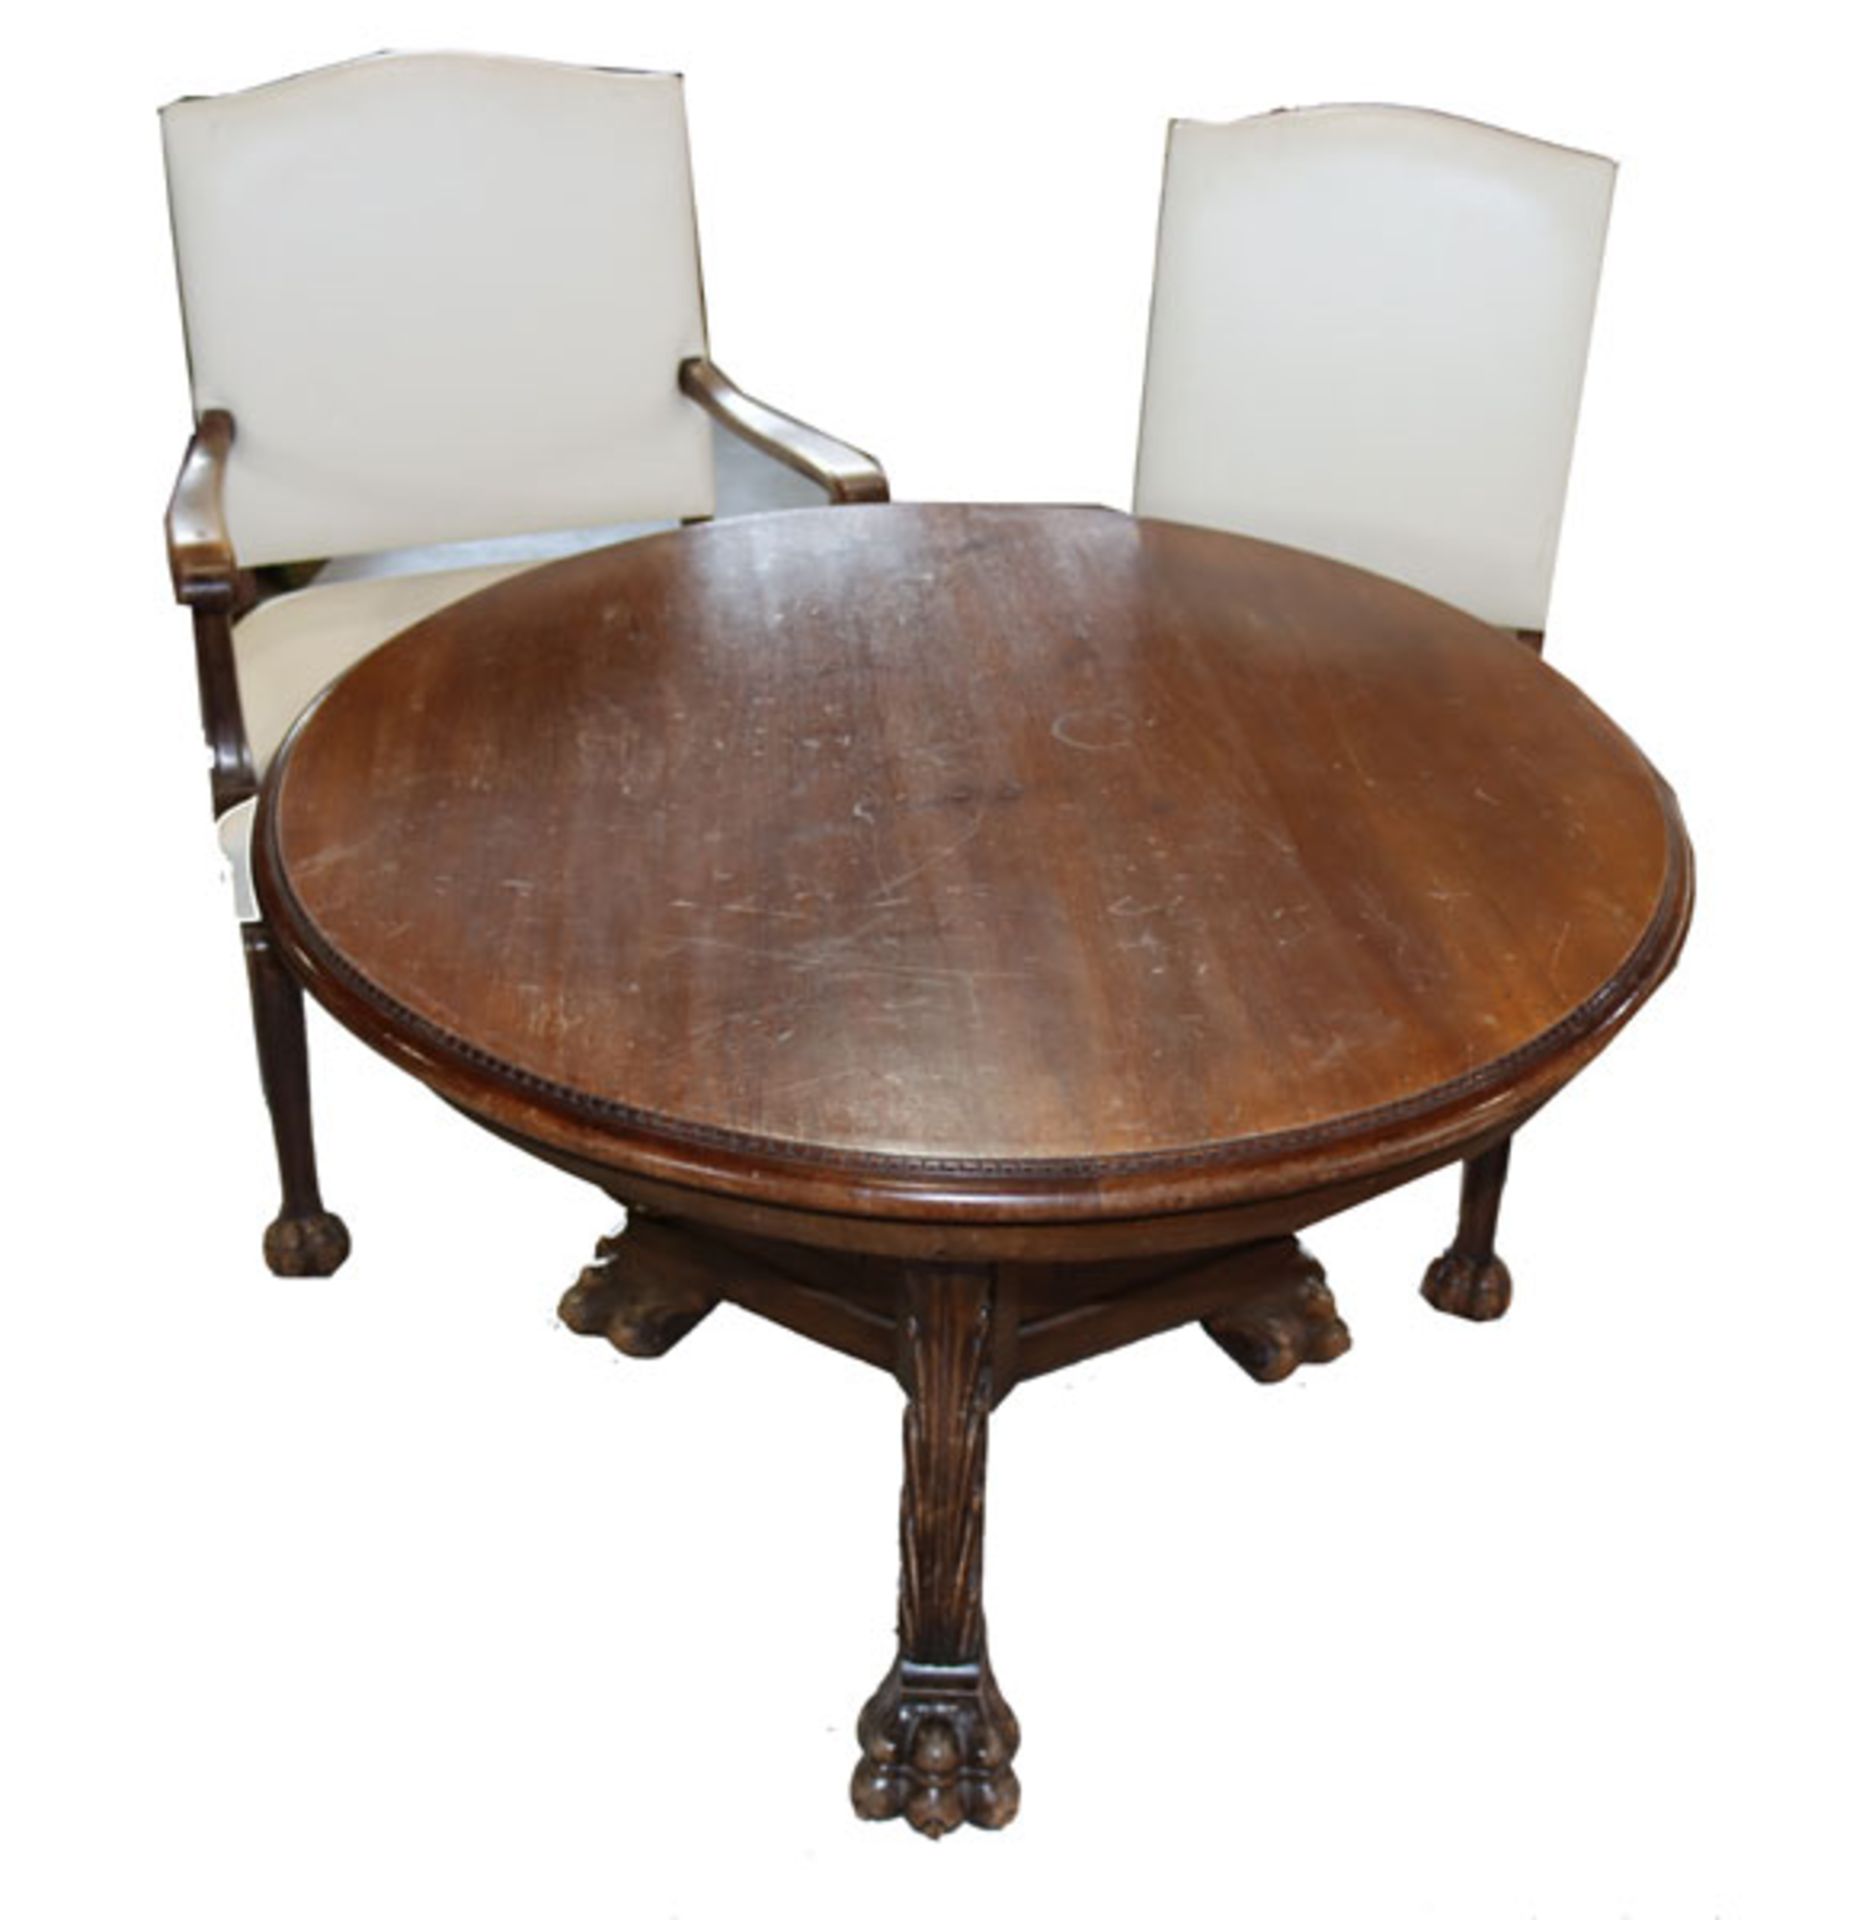 Sitzgruppe um 1910: runder Tisch auf 3 Tatzenbeinen, teils beschnitzt, H 68 cm, D 100 cm, 2 Stühle